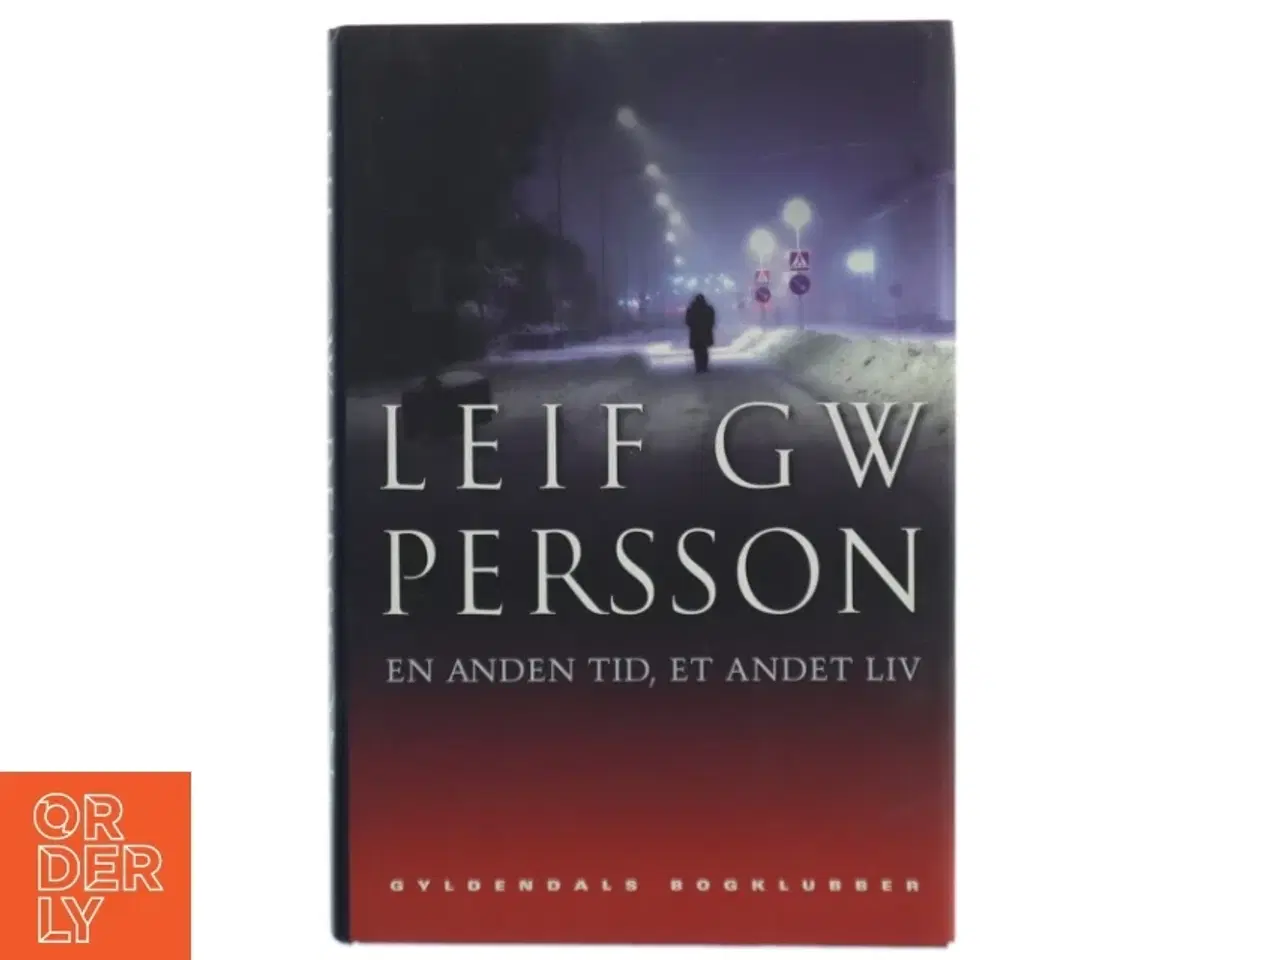 Billede 1 - En anden tid, et andet liv : en roman om en forbrydelse af Leif G. W. Persson (Bog)